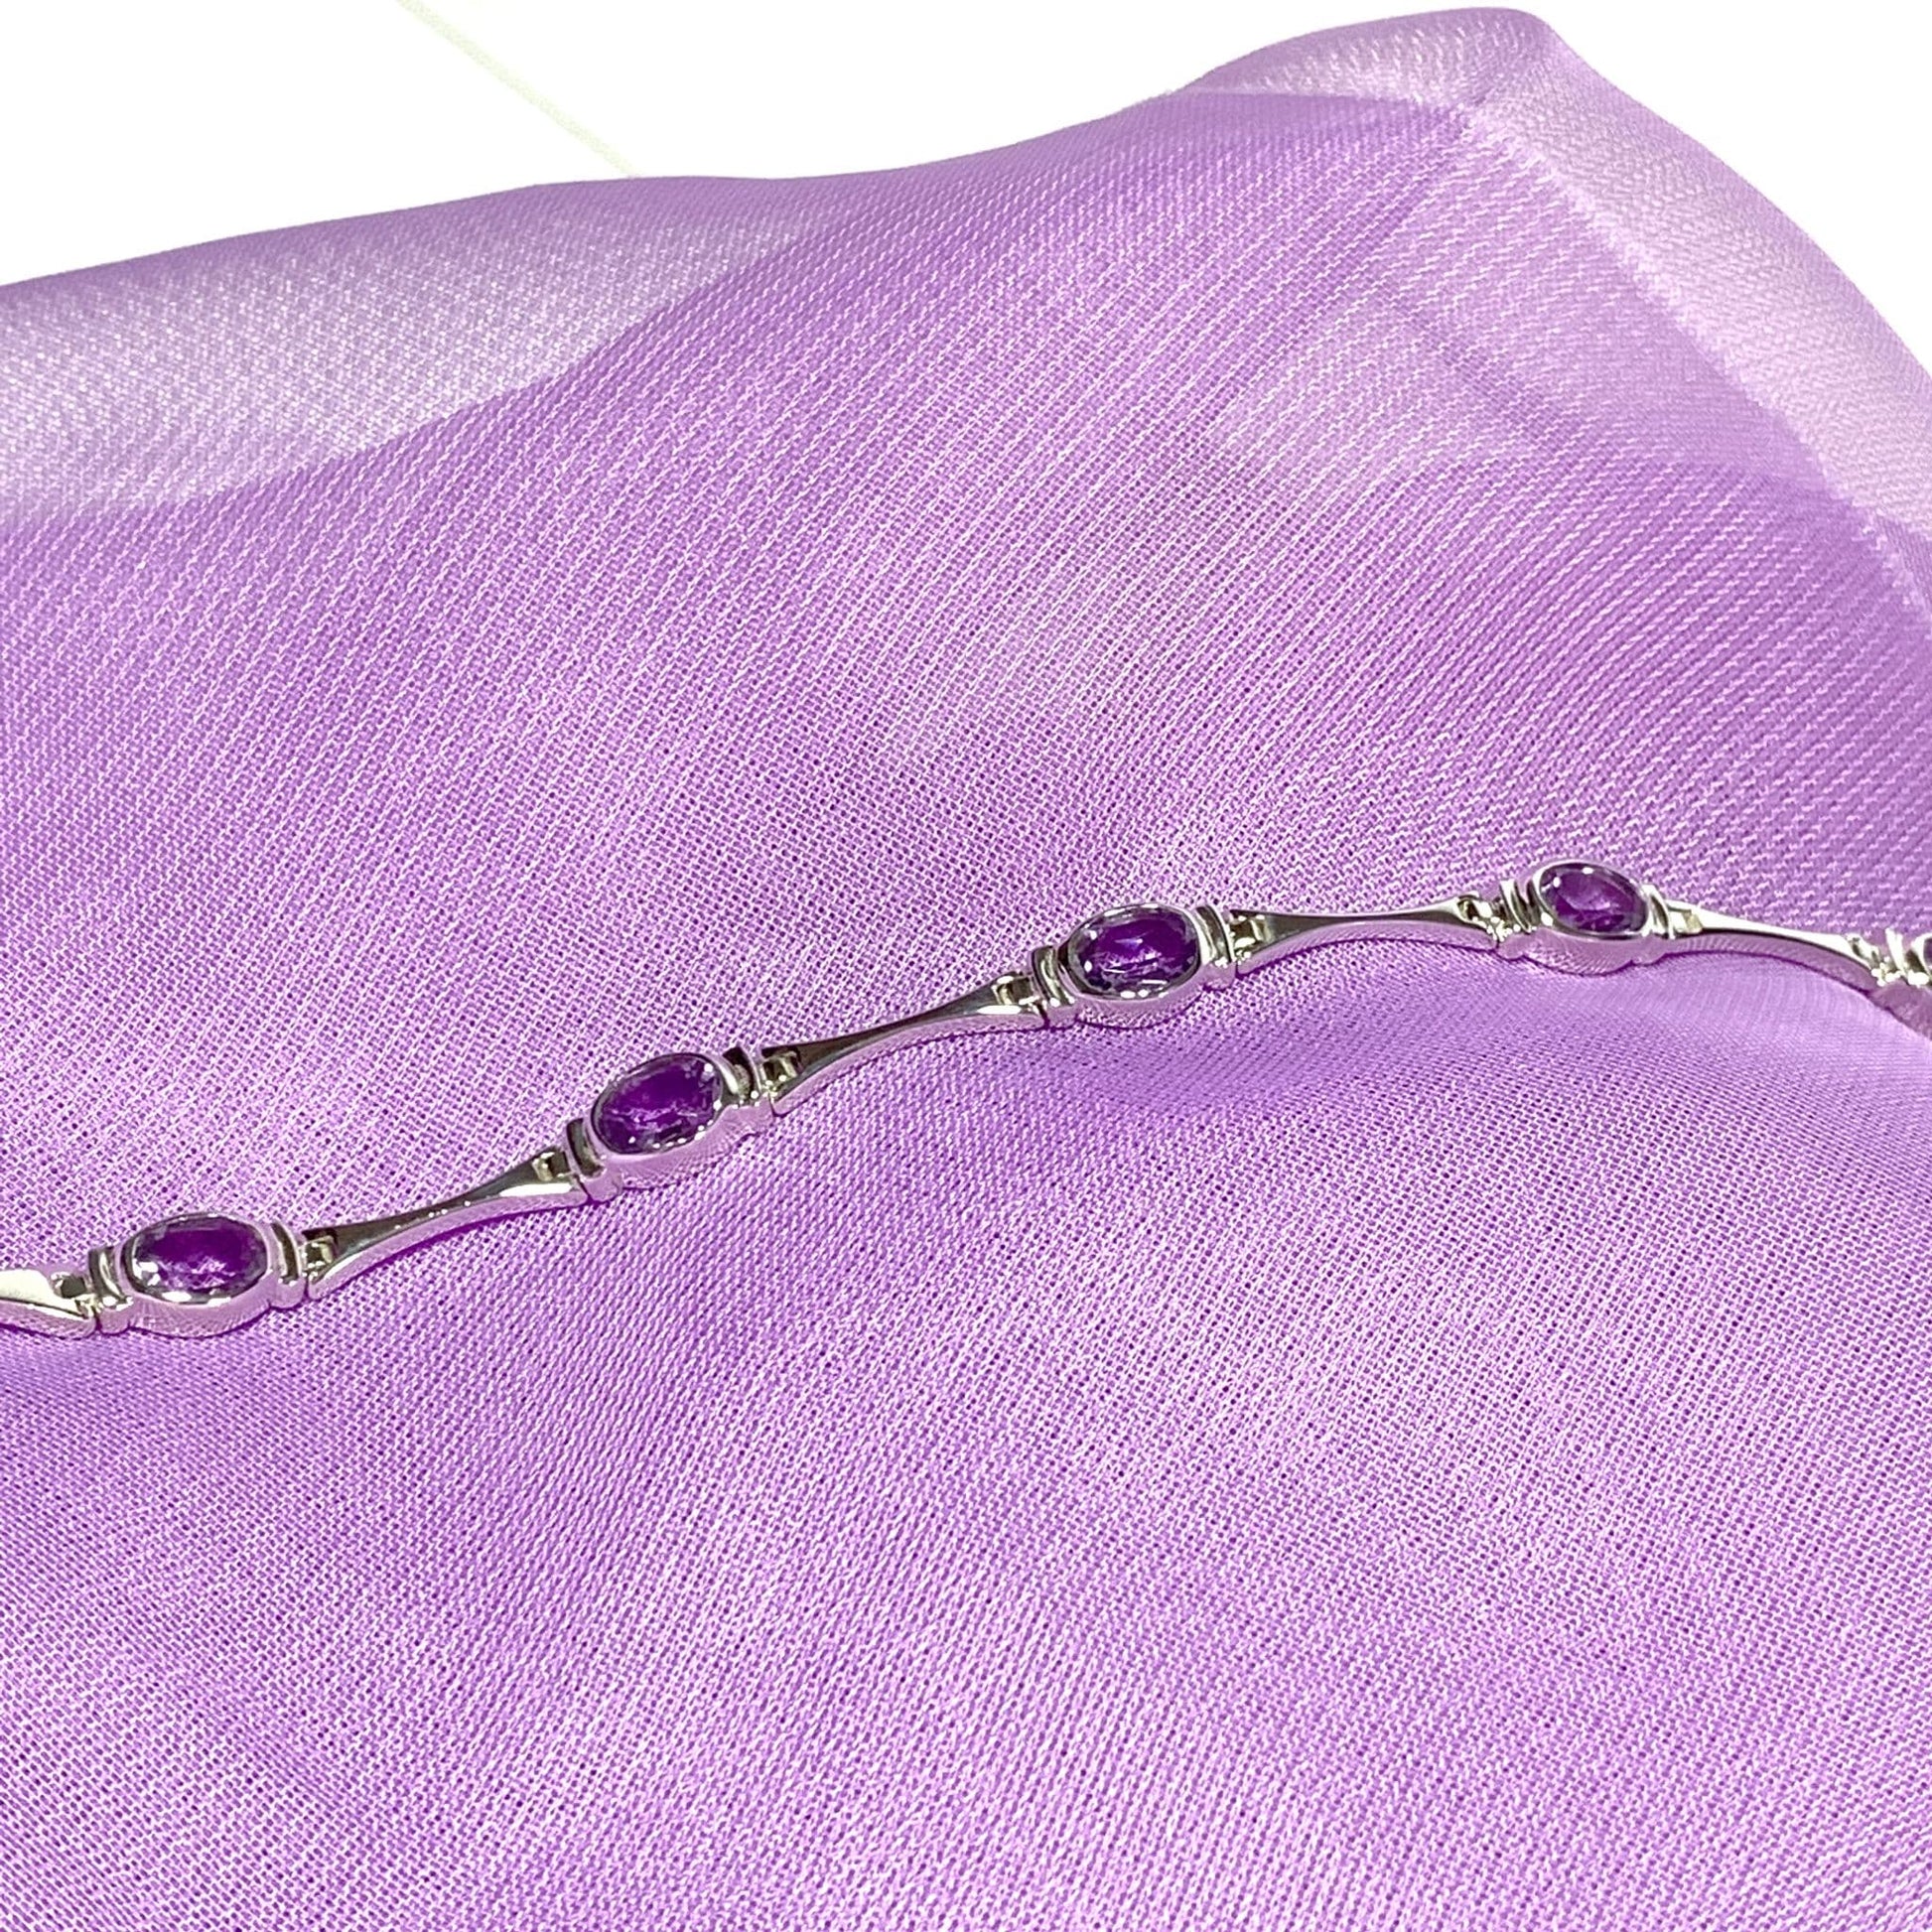 Oval purple amethyst sterling silver bracelet